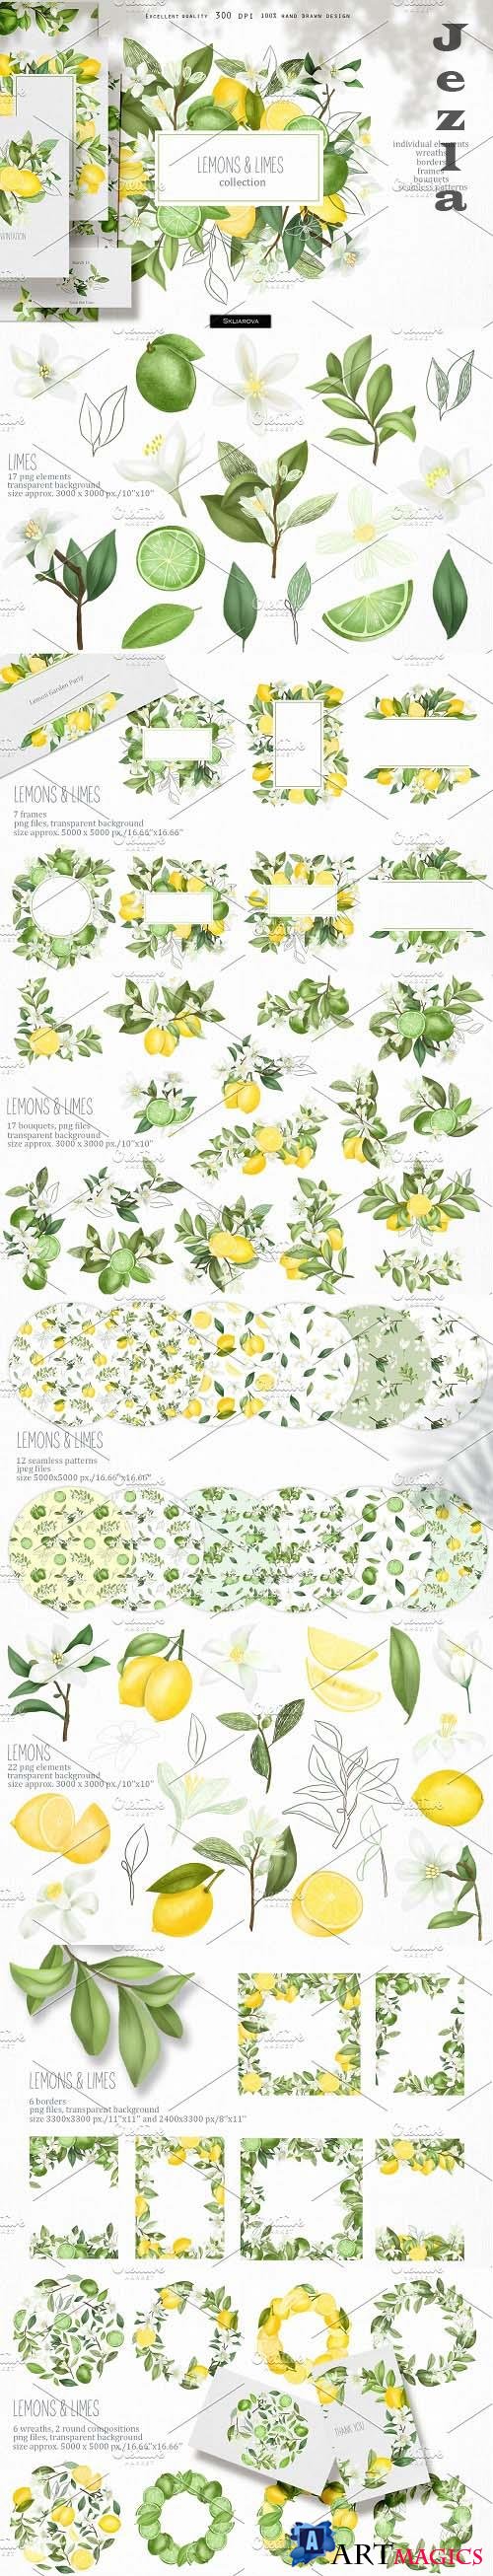 Lemons & limes collection - 4609745